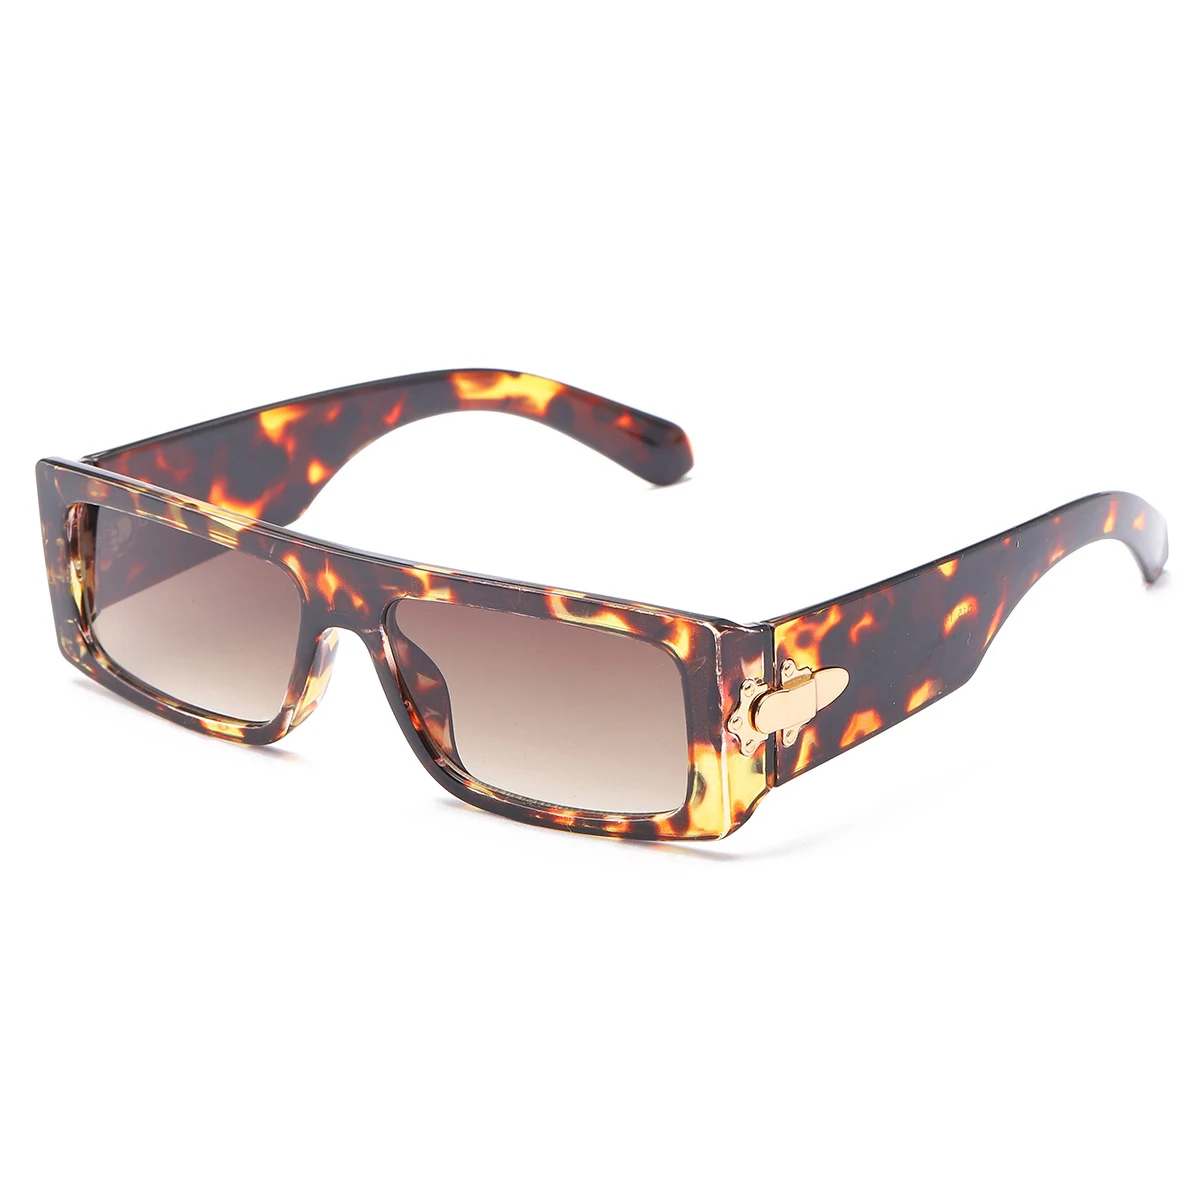 

2022 Metal Hinge Squared Sunglasses UV 400 Occhiali Da Vista Small Frame Unisex Gafas De Sol PC Sun Glasses Sunglasses Woman, Picture